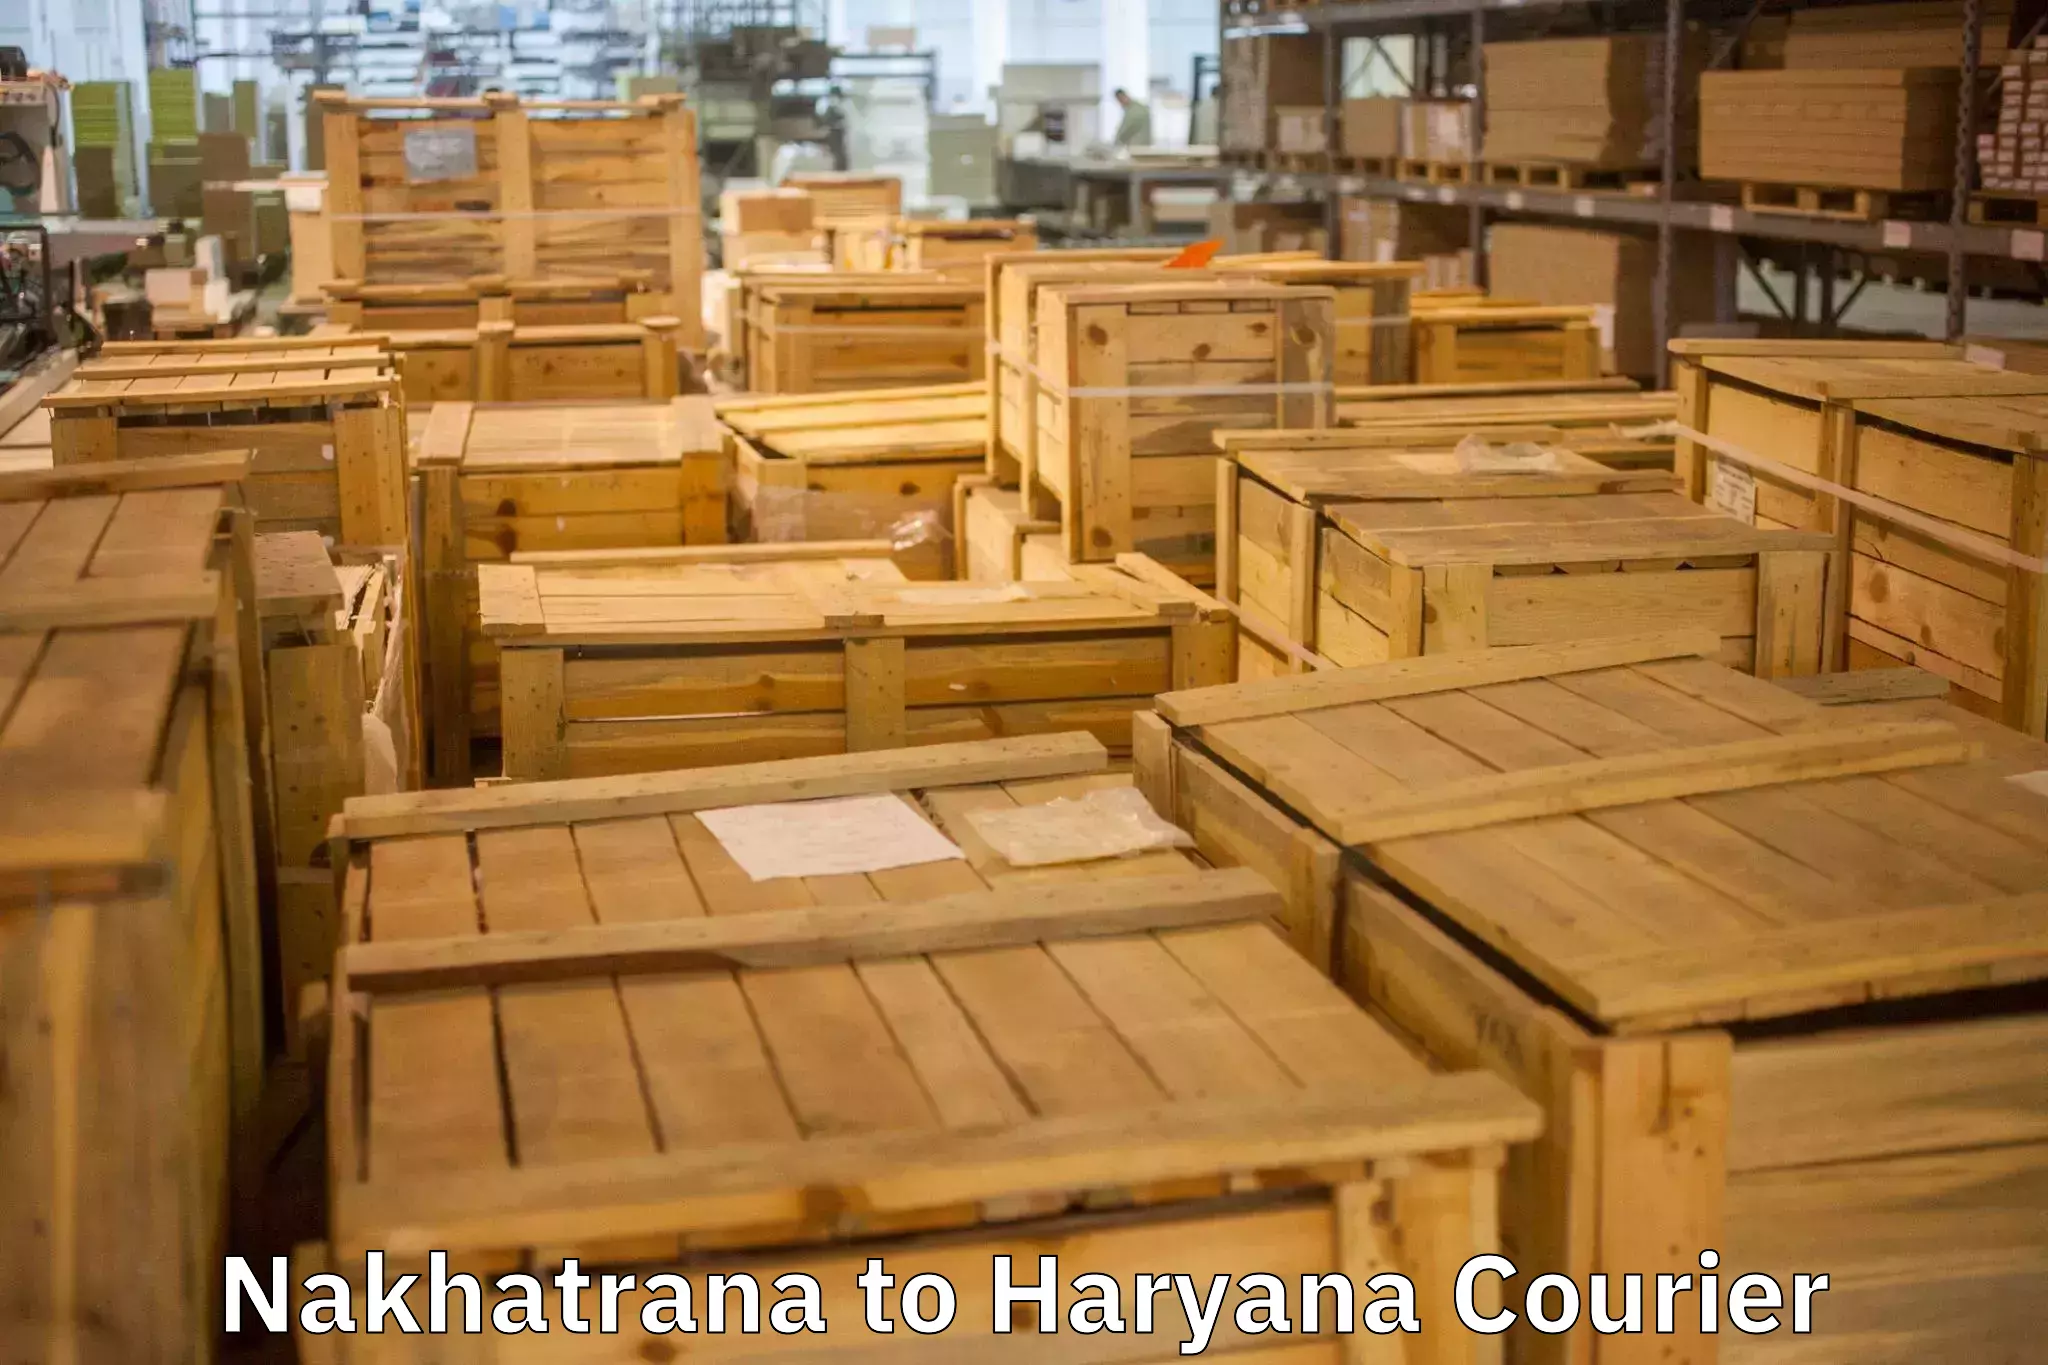 Efficient packing and moving Nakhatrana to Julana